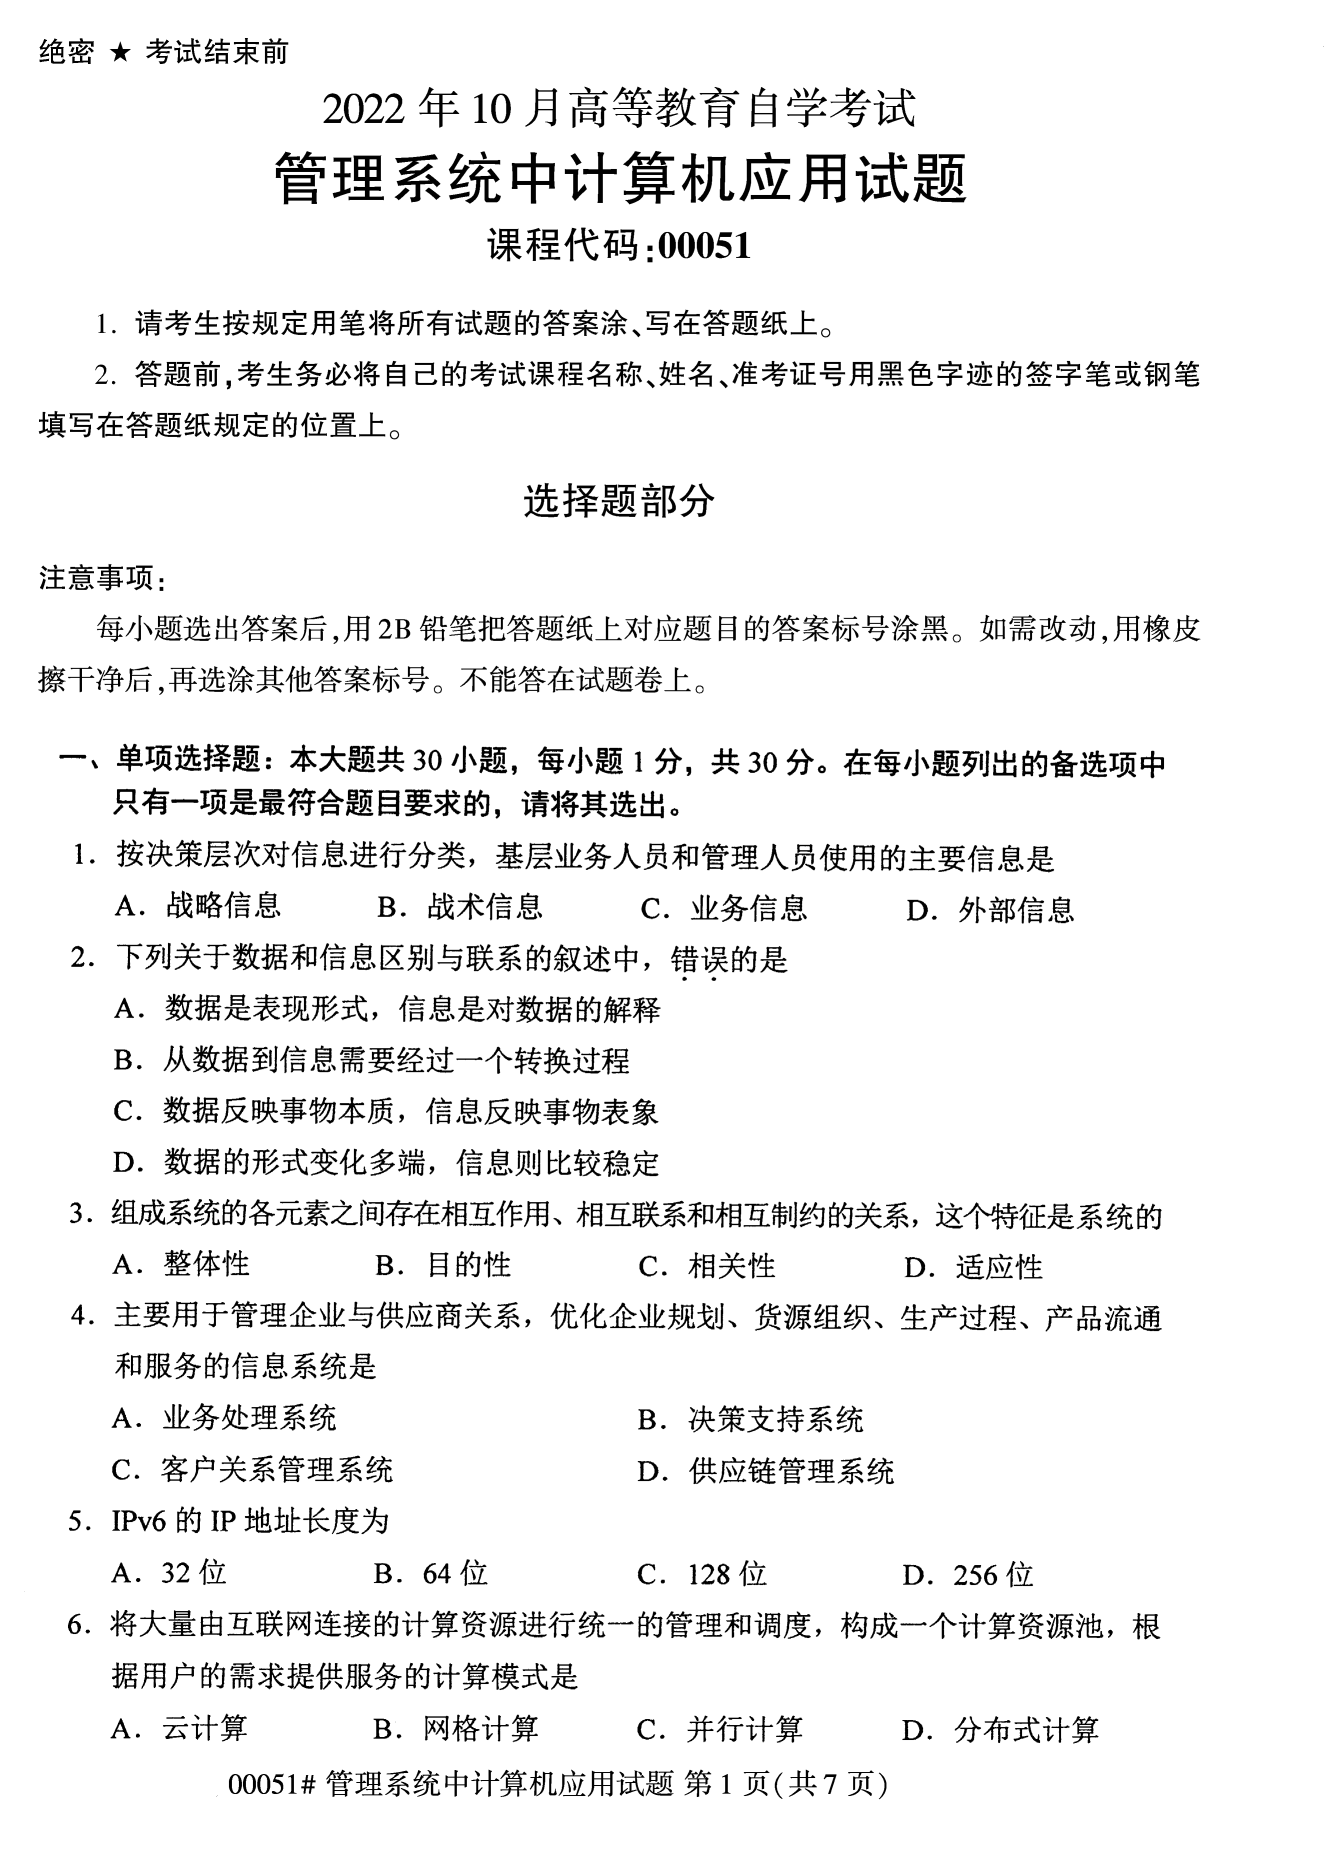 2022年10月全国统考课程云南自考管理系统中计算机应用试卷